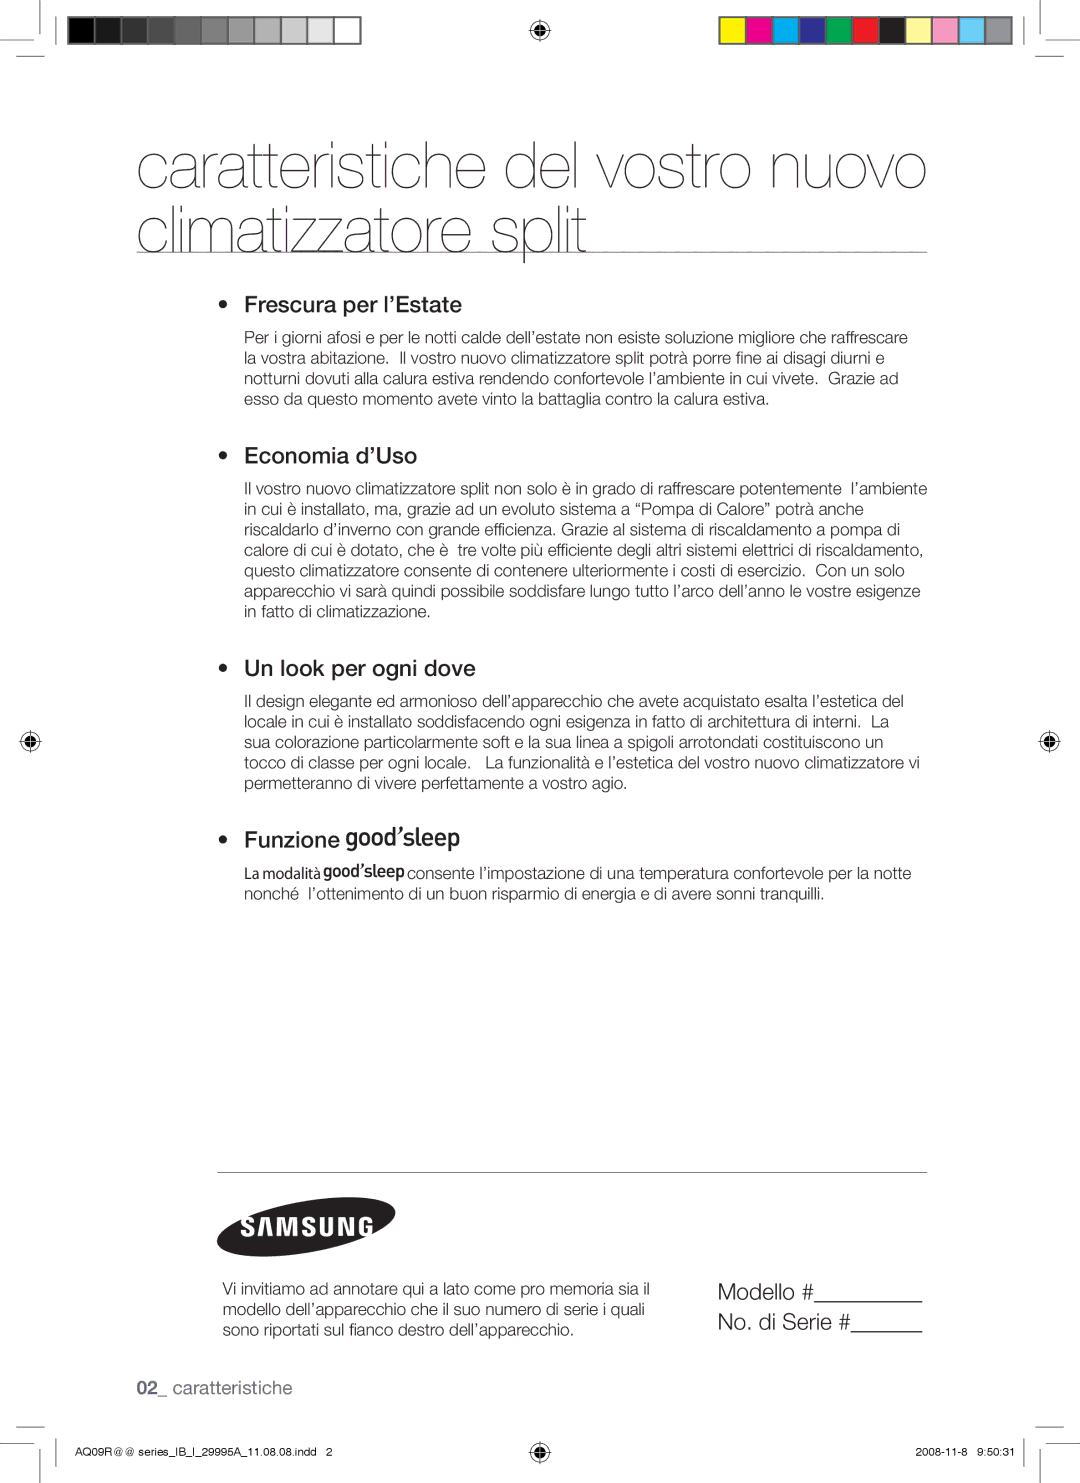 Samsung AQ12UGBX, AQ18UGAN, AQ24UGAN, AQ24UGAX, AQ12UGBN manual Caratteristiche del vostro nuovo climatizzatore split 